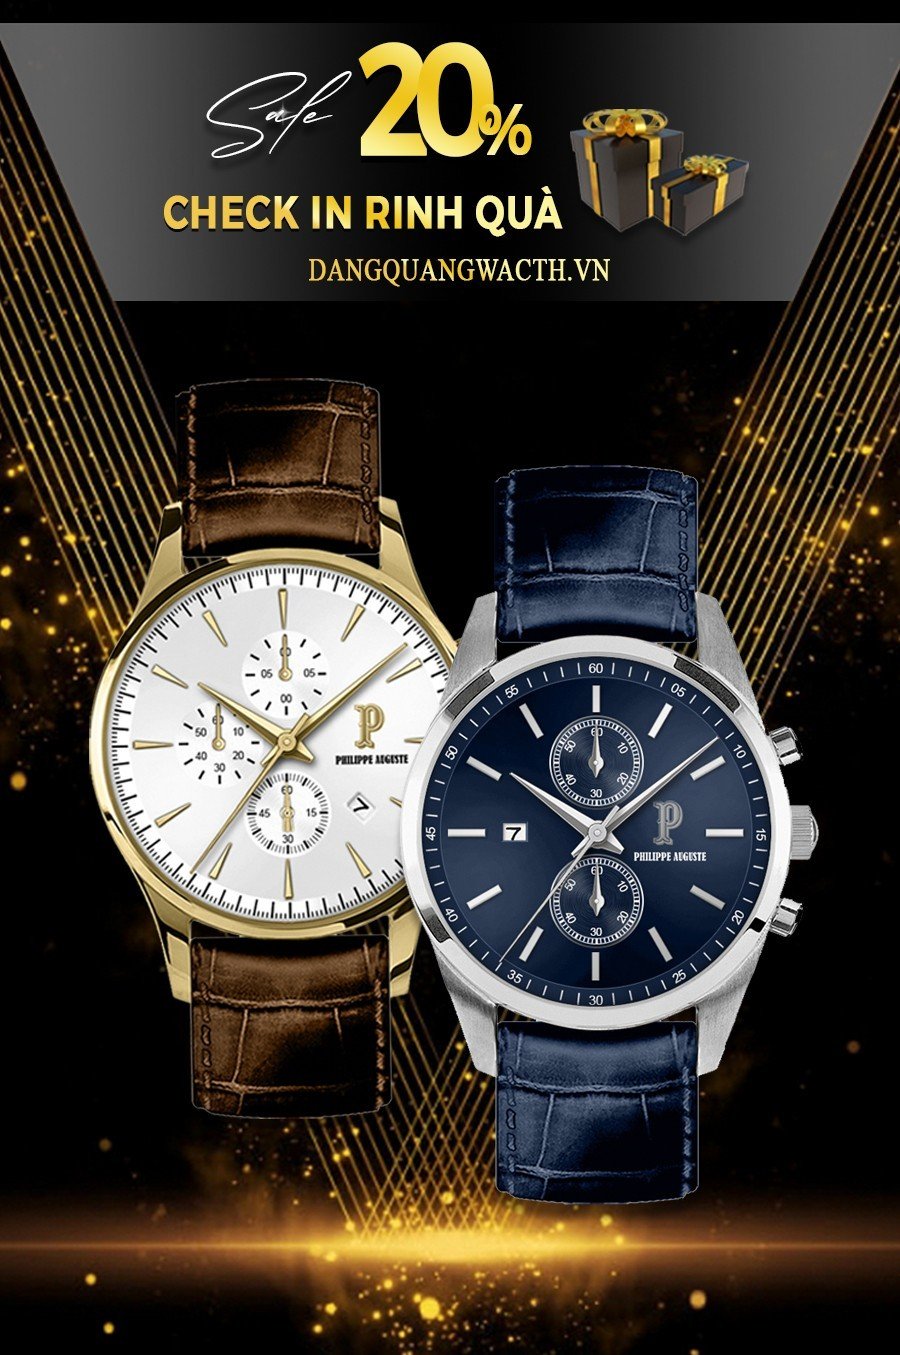 Đăng Quang Watch - Giảm giá 20% - Tặng ngay quà tặng đồng hồ, kính mắt hàng hiệu - 3